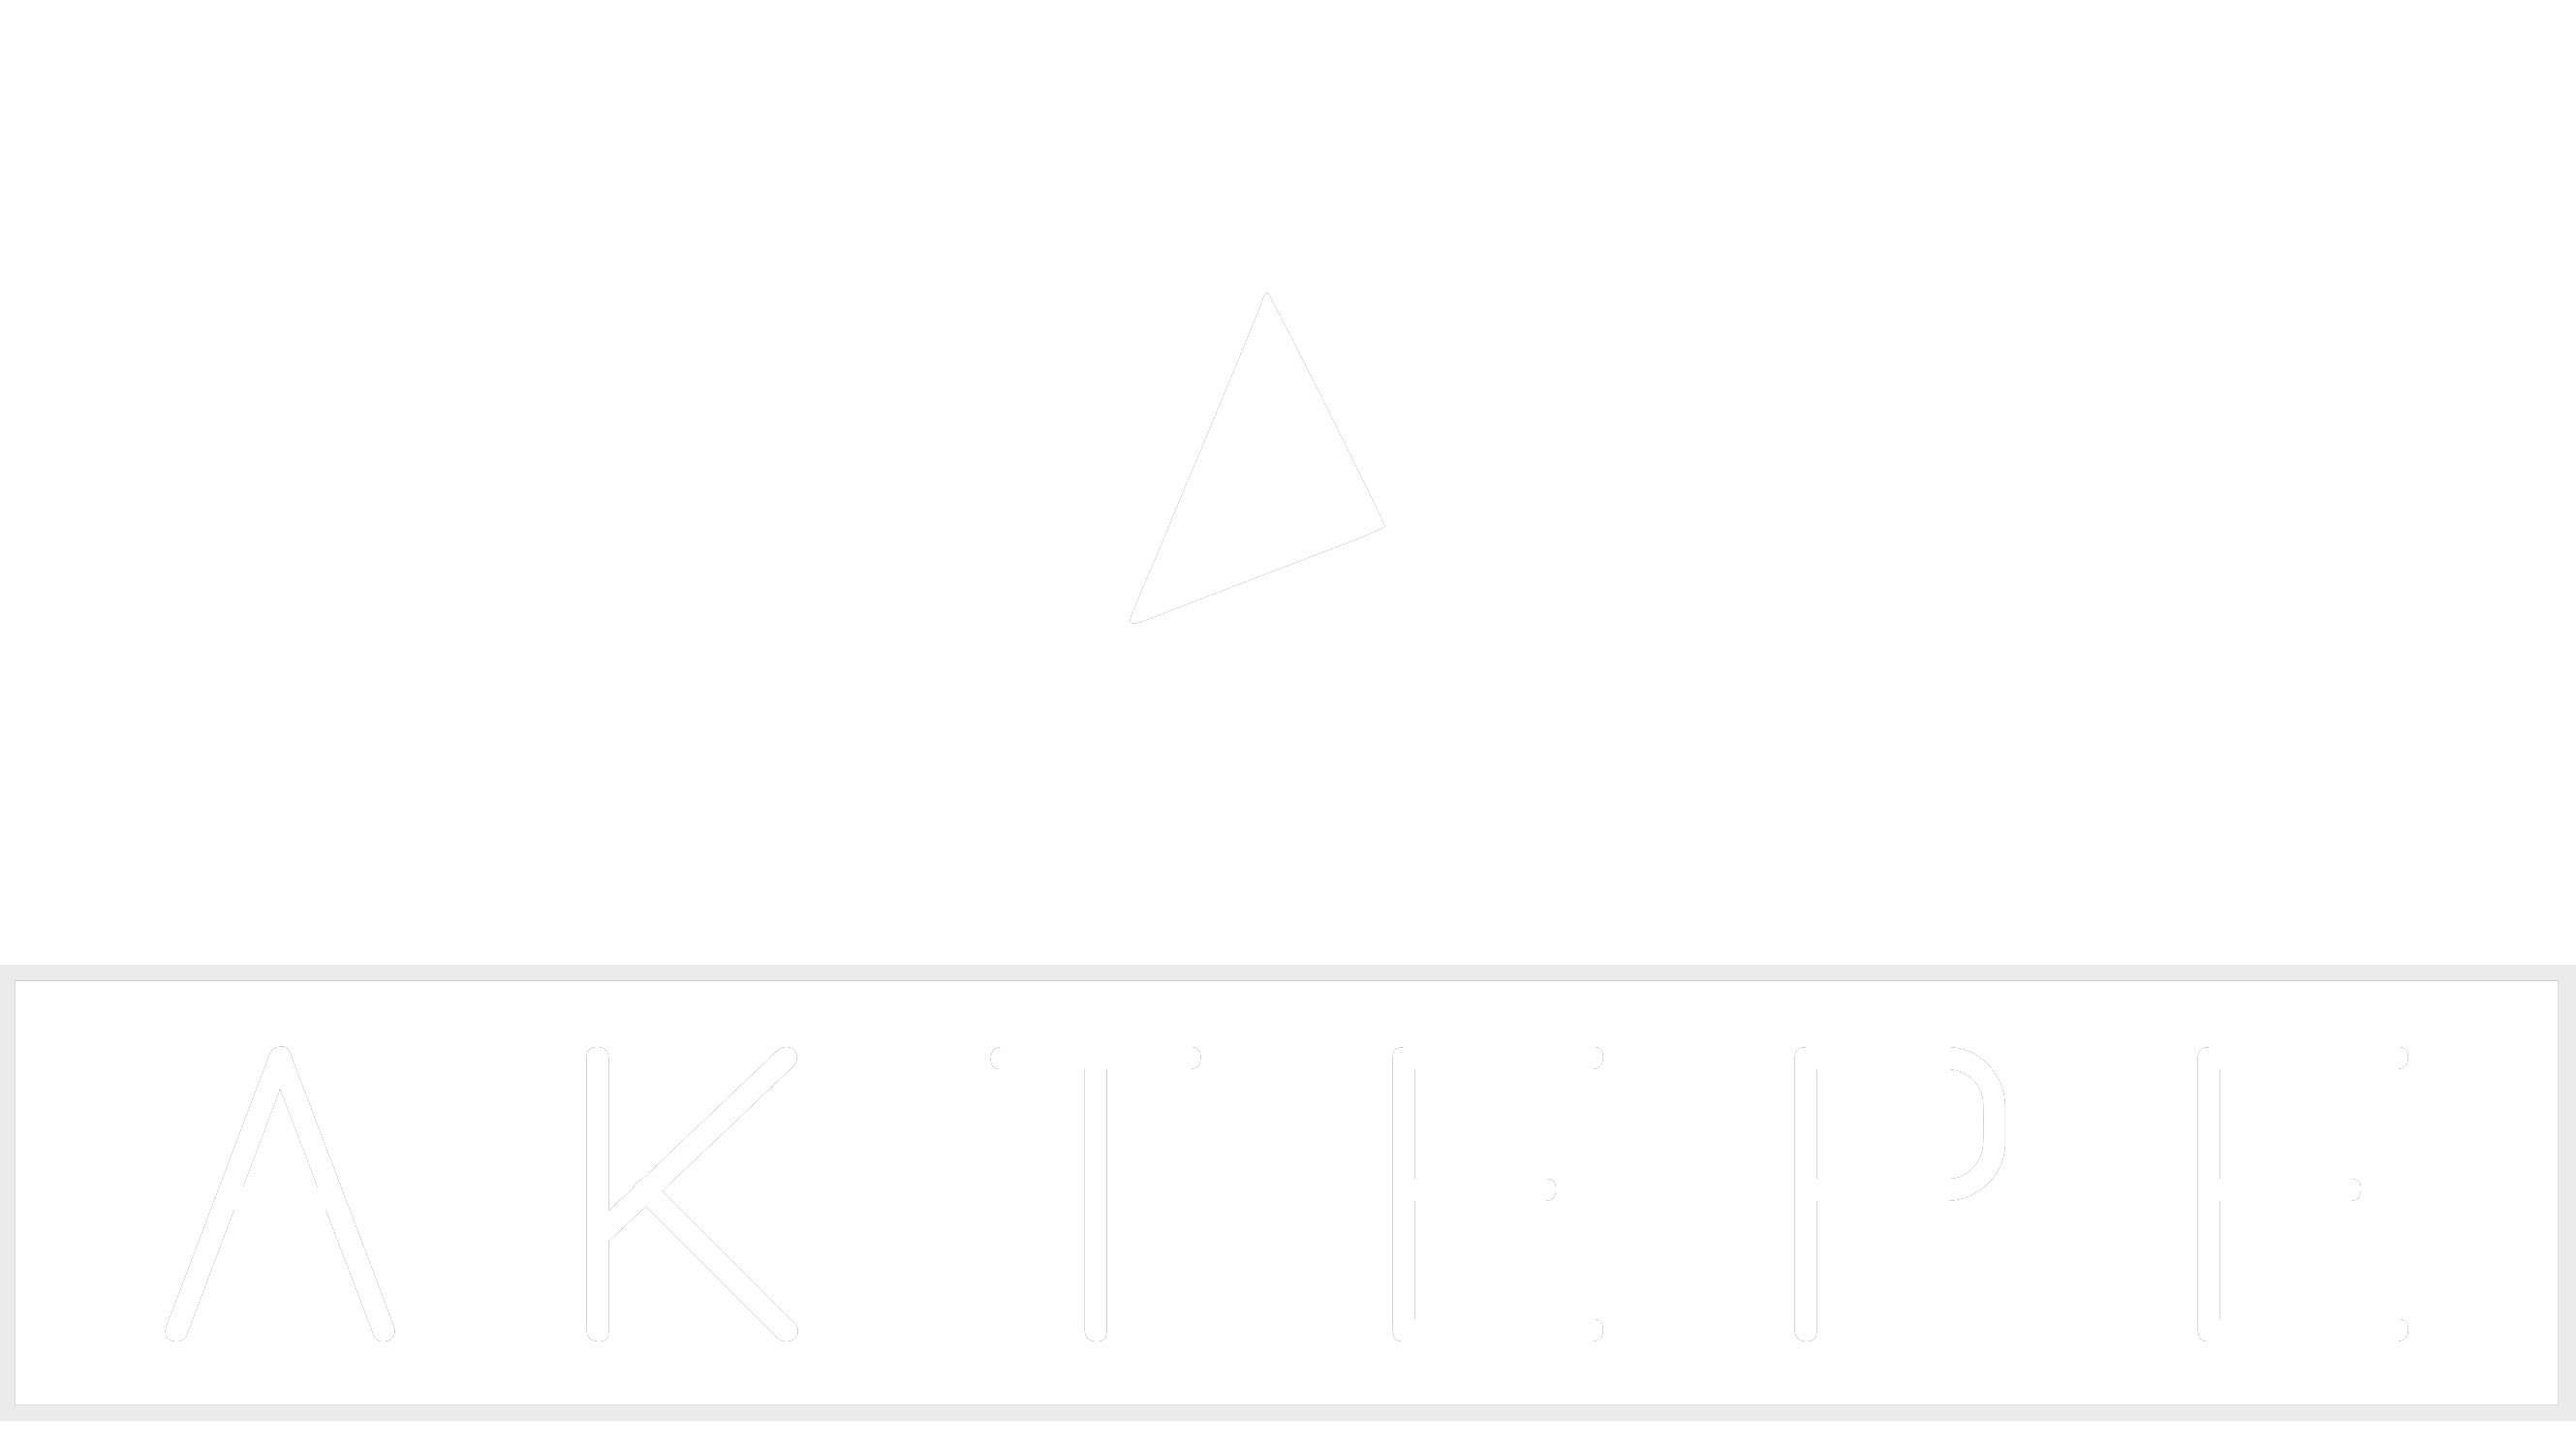 Mercedes - Aktepe Shop - Oto Müzik Görüntü Navigasyon Sistemleri ve Teyp Çerçevesi Satış Merkezi